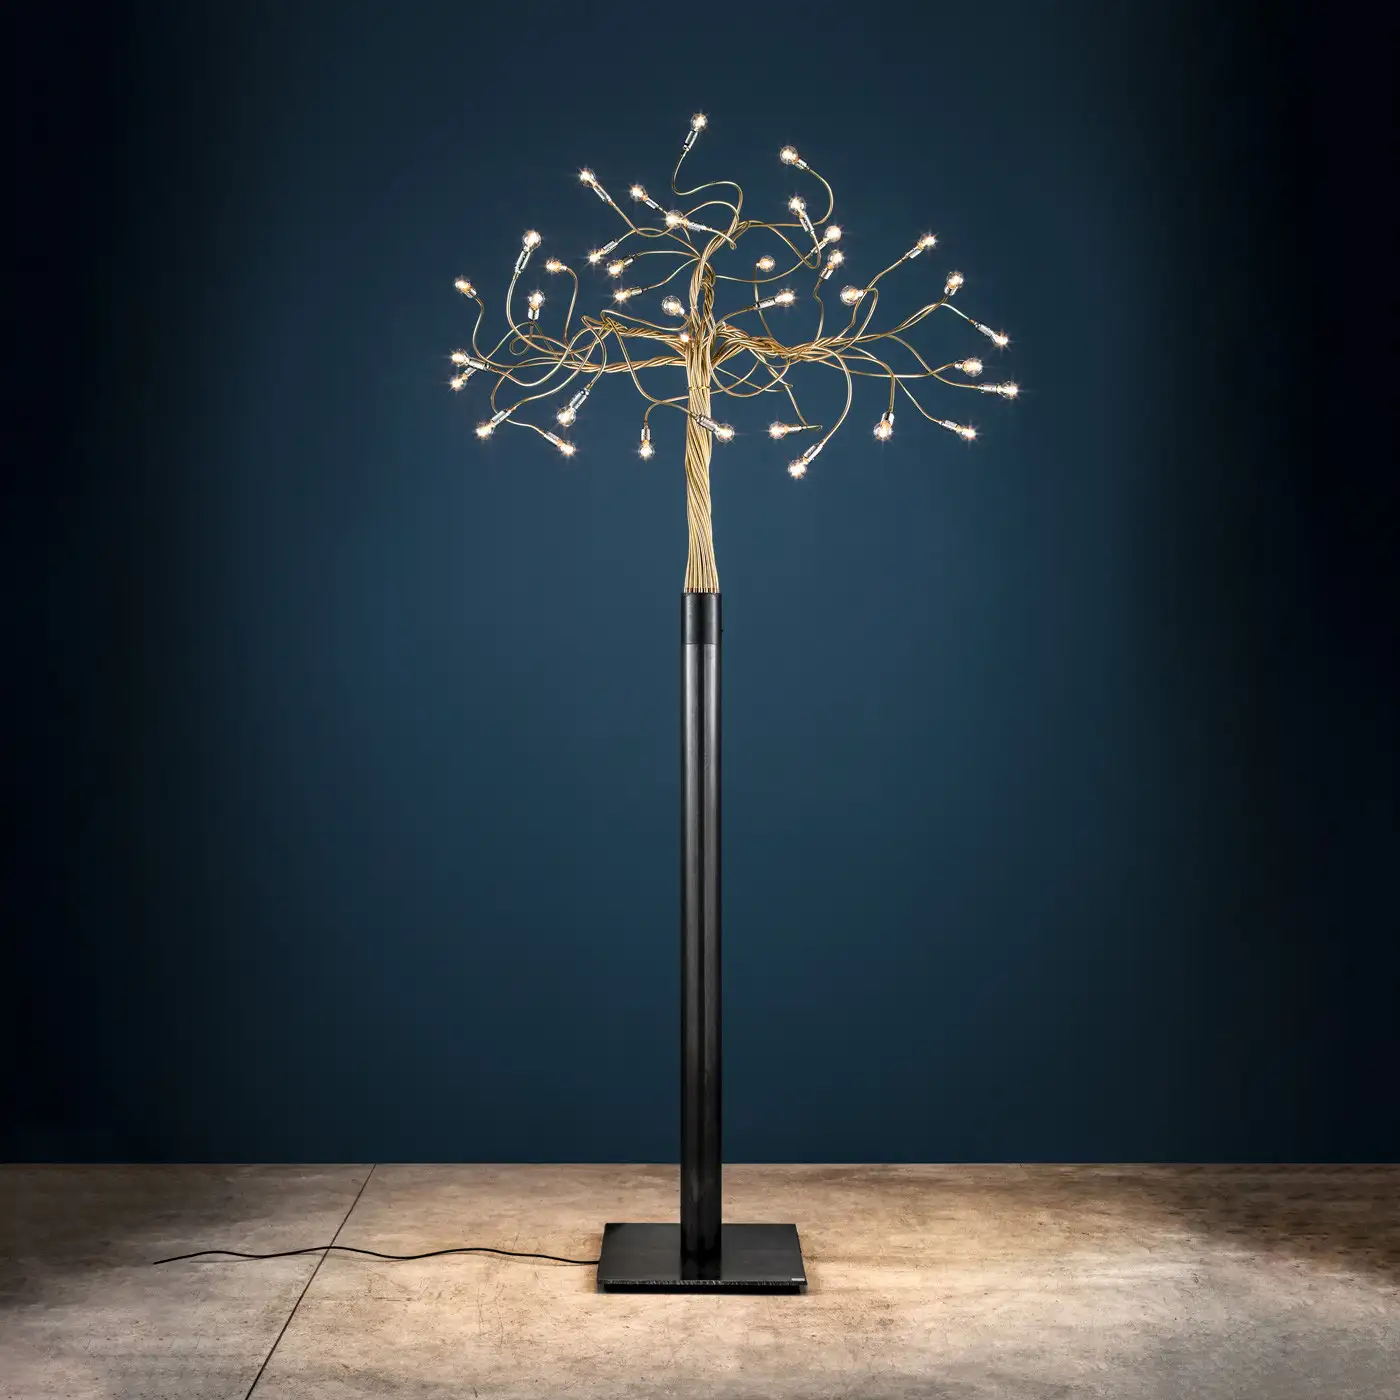 Der Leuchter 'Albero della luce' von Catellani & Smith wirkt wie ein filigraner Baum und steht hier vor einer dunkelblauen Wand.